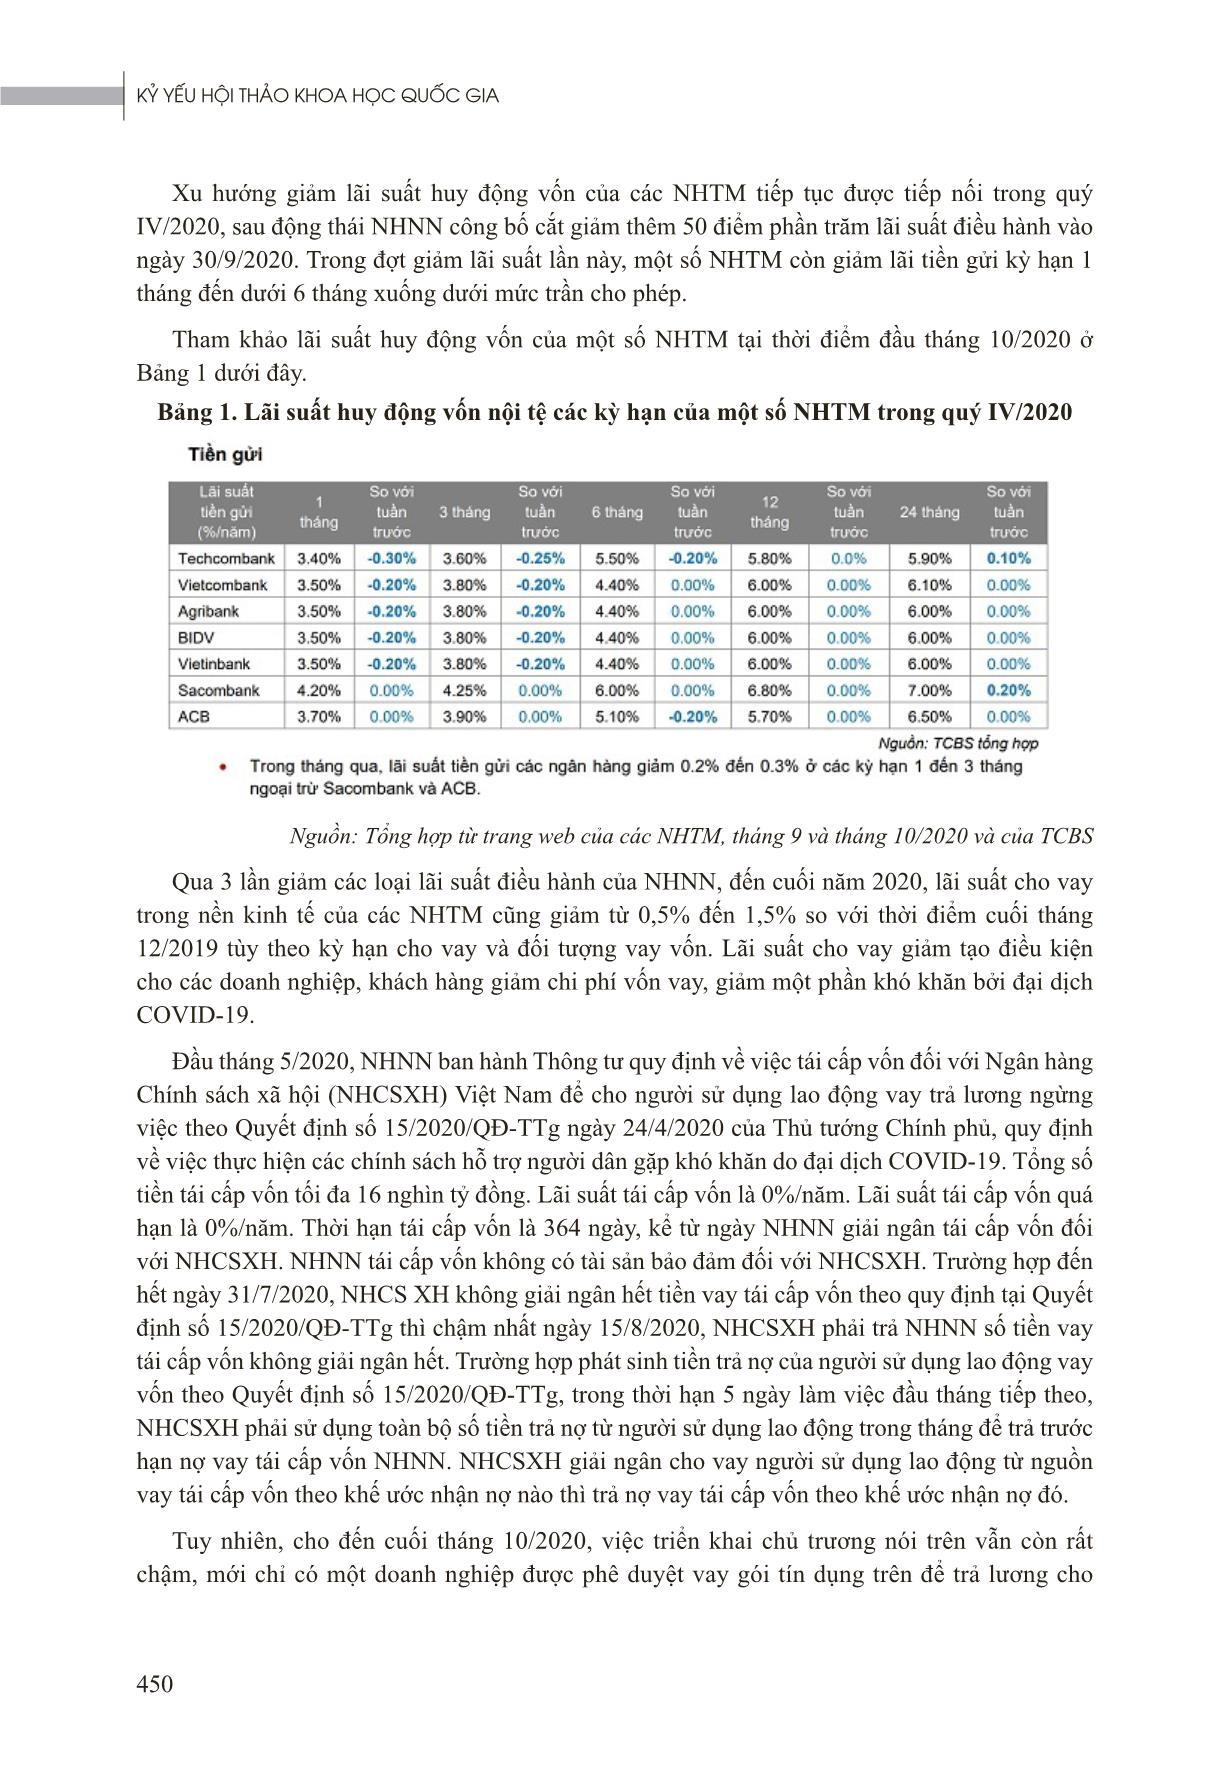 Tác động của đại dịch Covid-19 đến cho vay và nợ xấu của Ngân hàng Thương mại Việt Nam trang 5